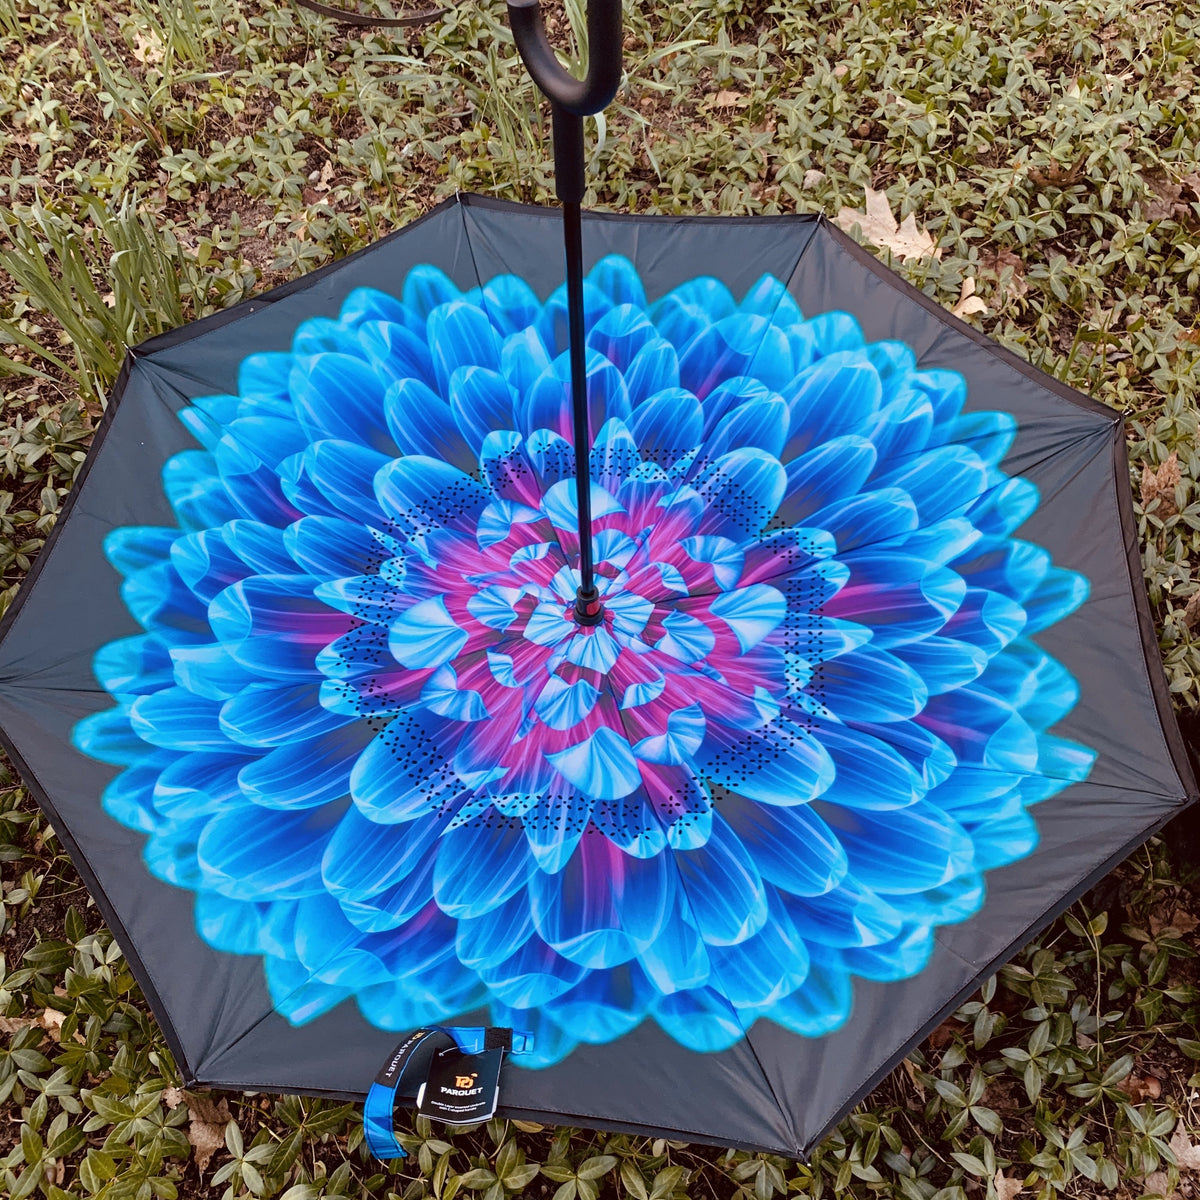 Best Reverse Umbrella